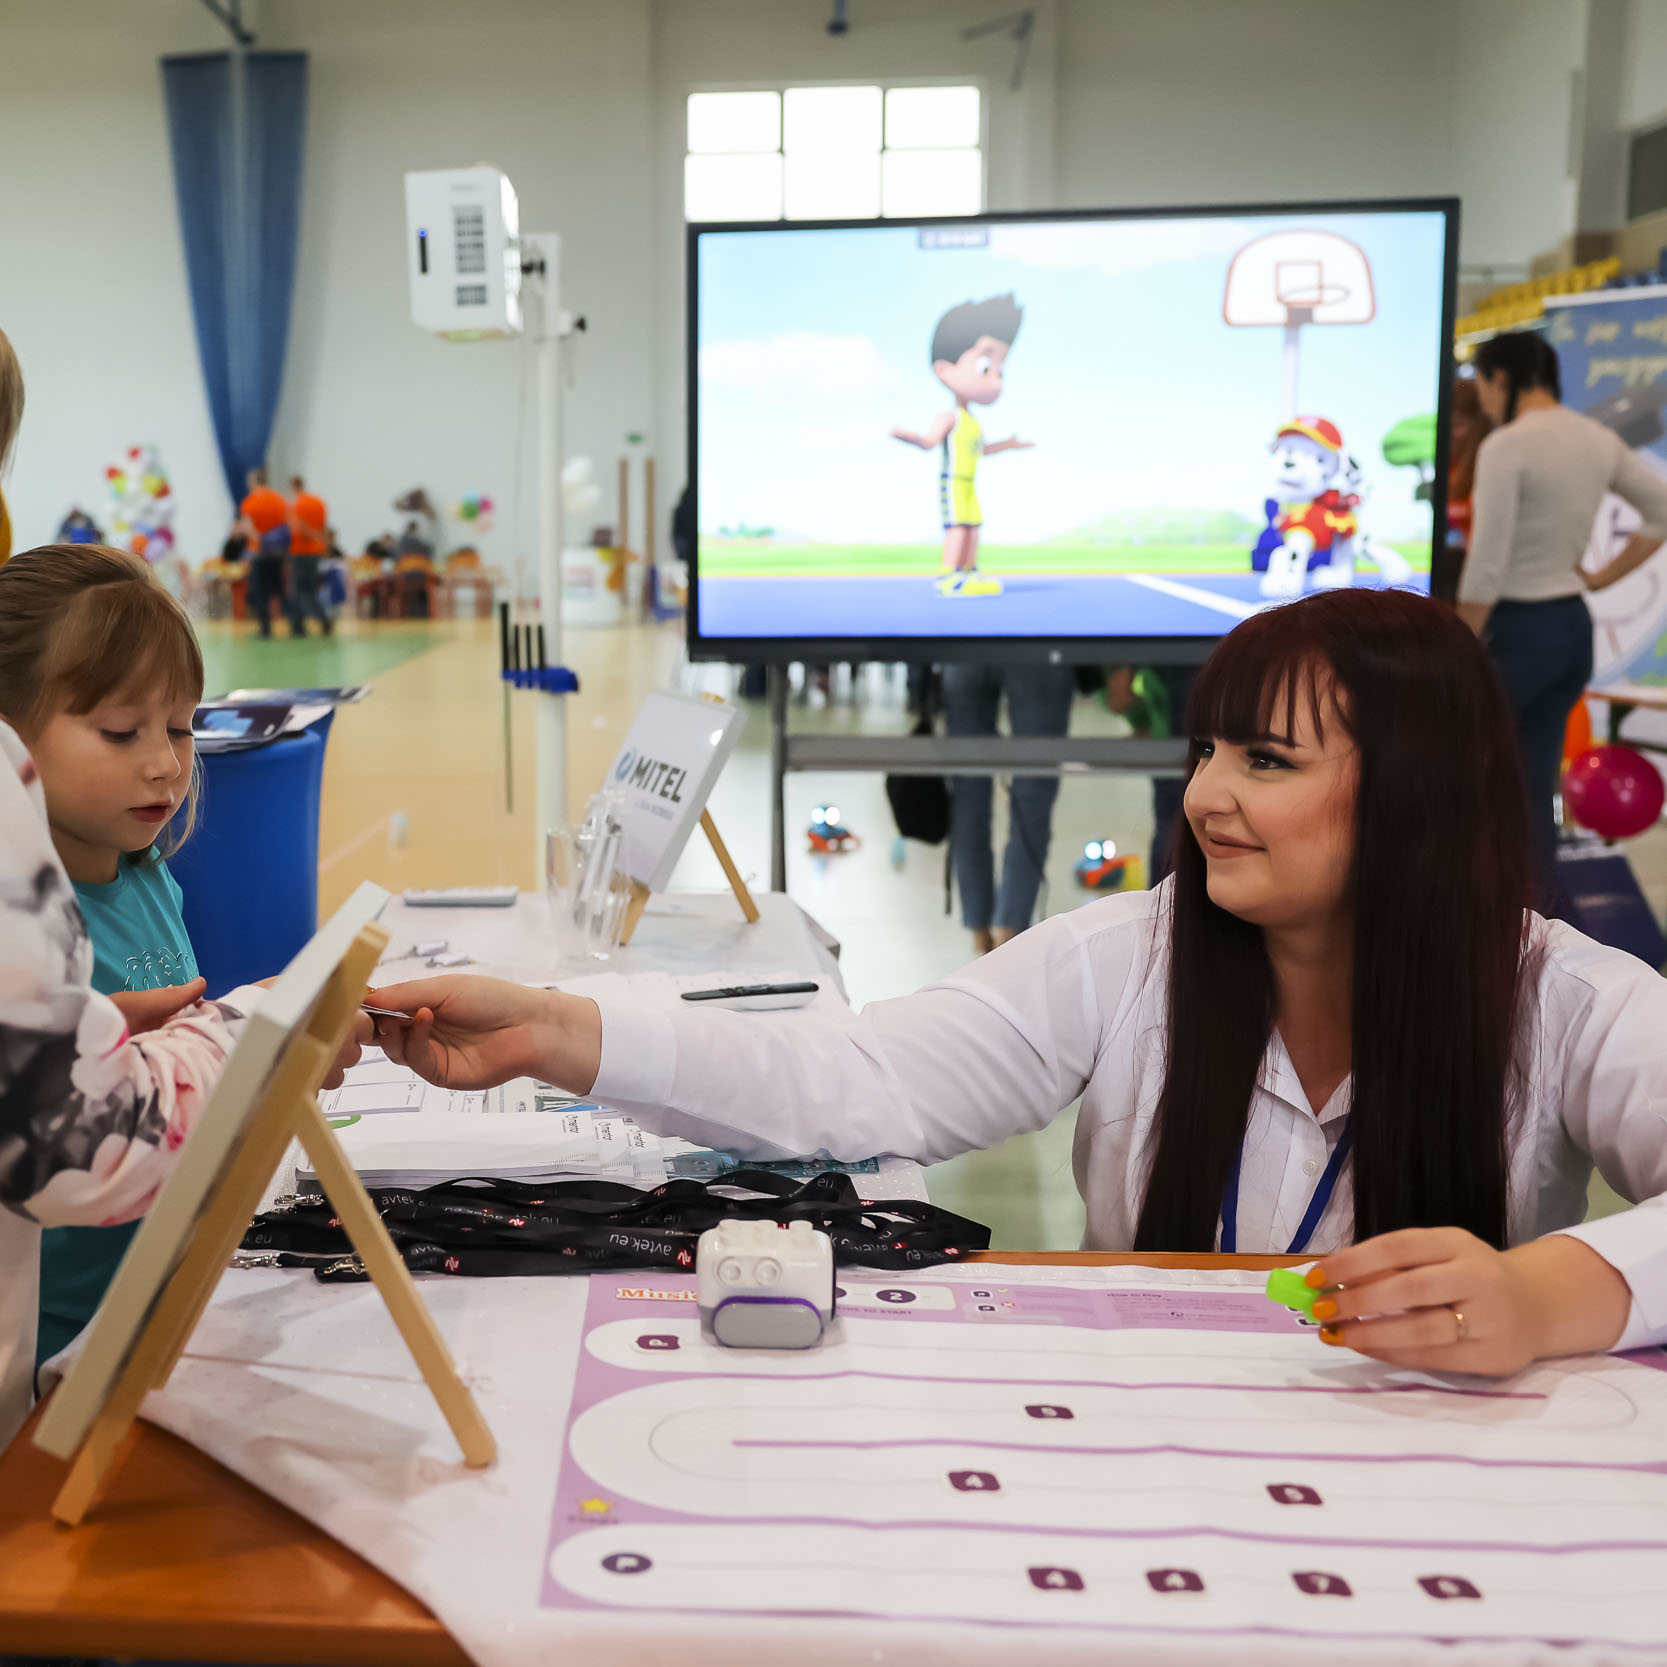 Opiekunka warsztatów podająca klocki dzieciom w trakcie zajęć, za nią ekran z wyświetlaną kreskówką